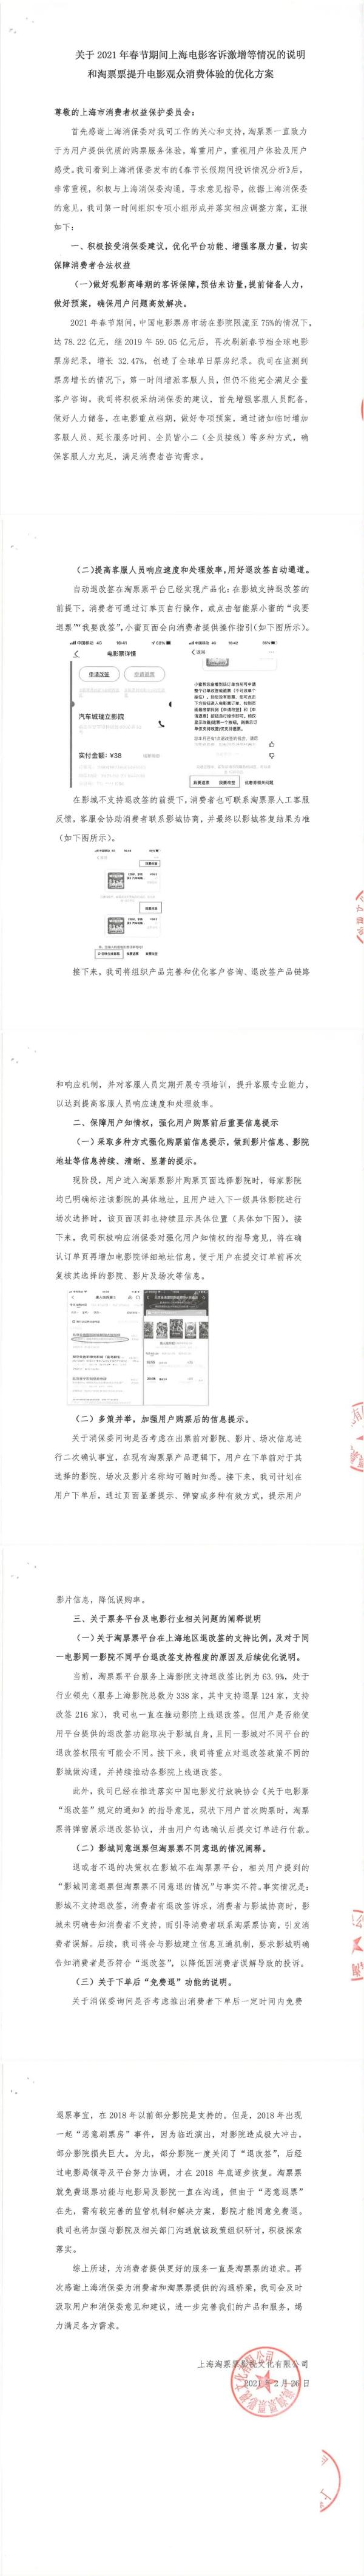 电影票不支持退改？上海消保委提出六点建议，淘票票、猫眼电影回应